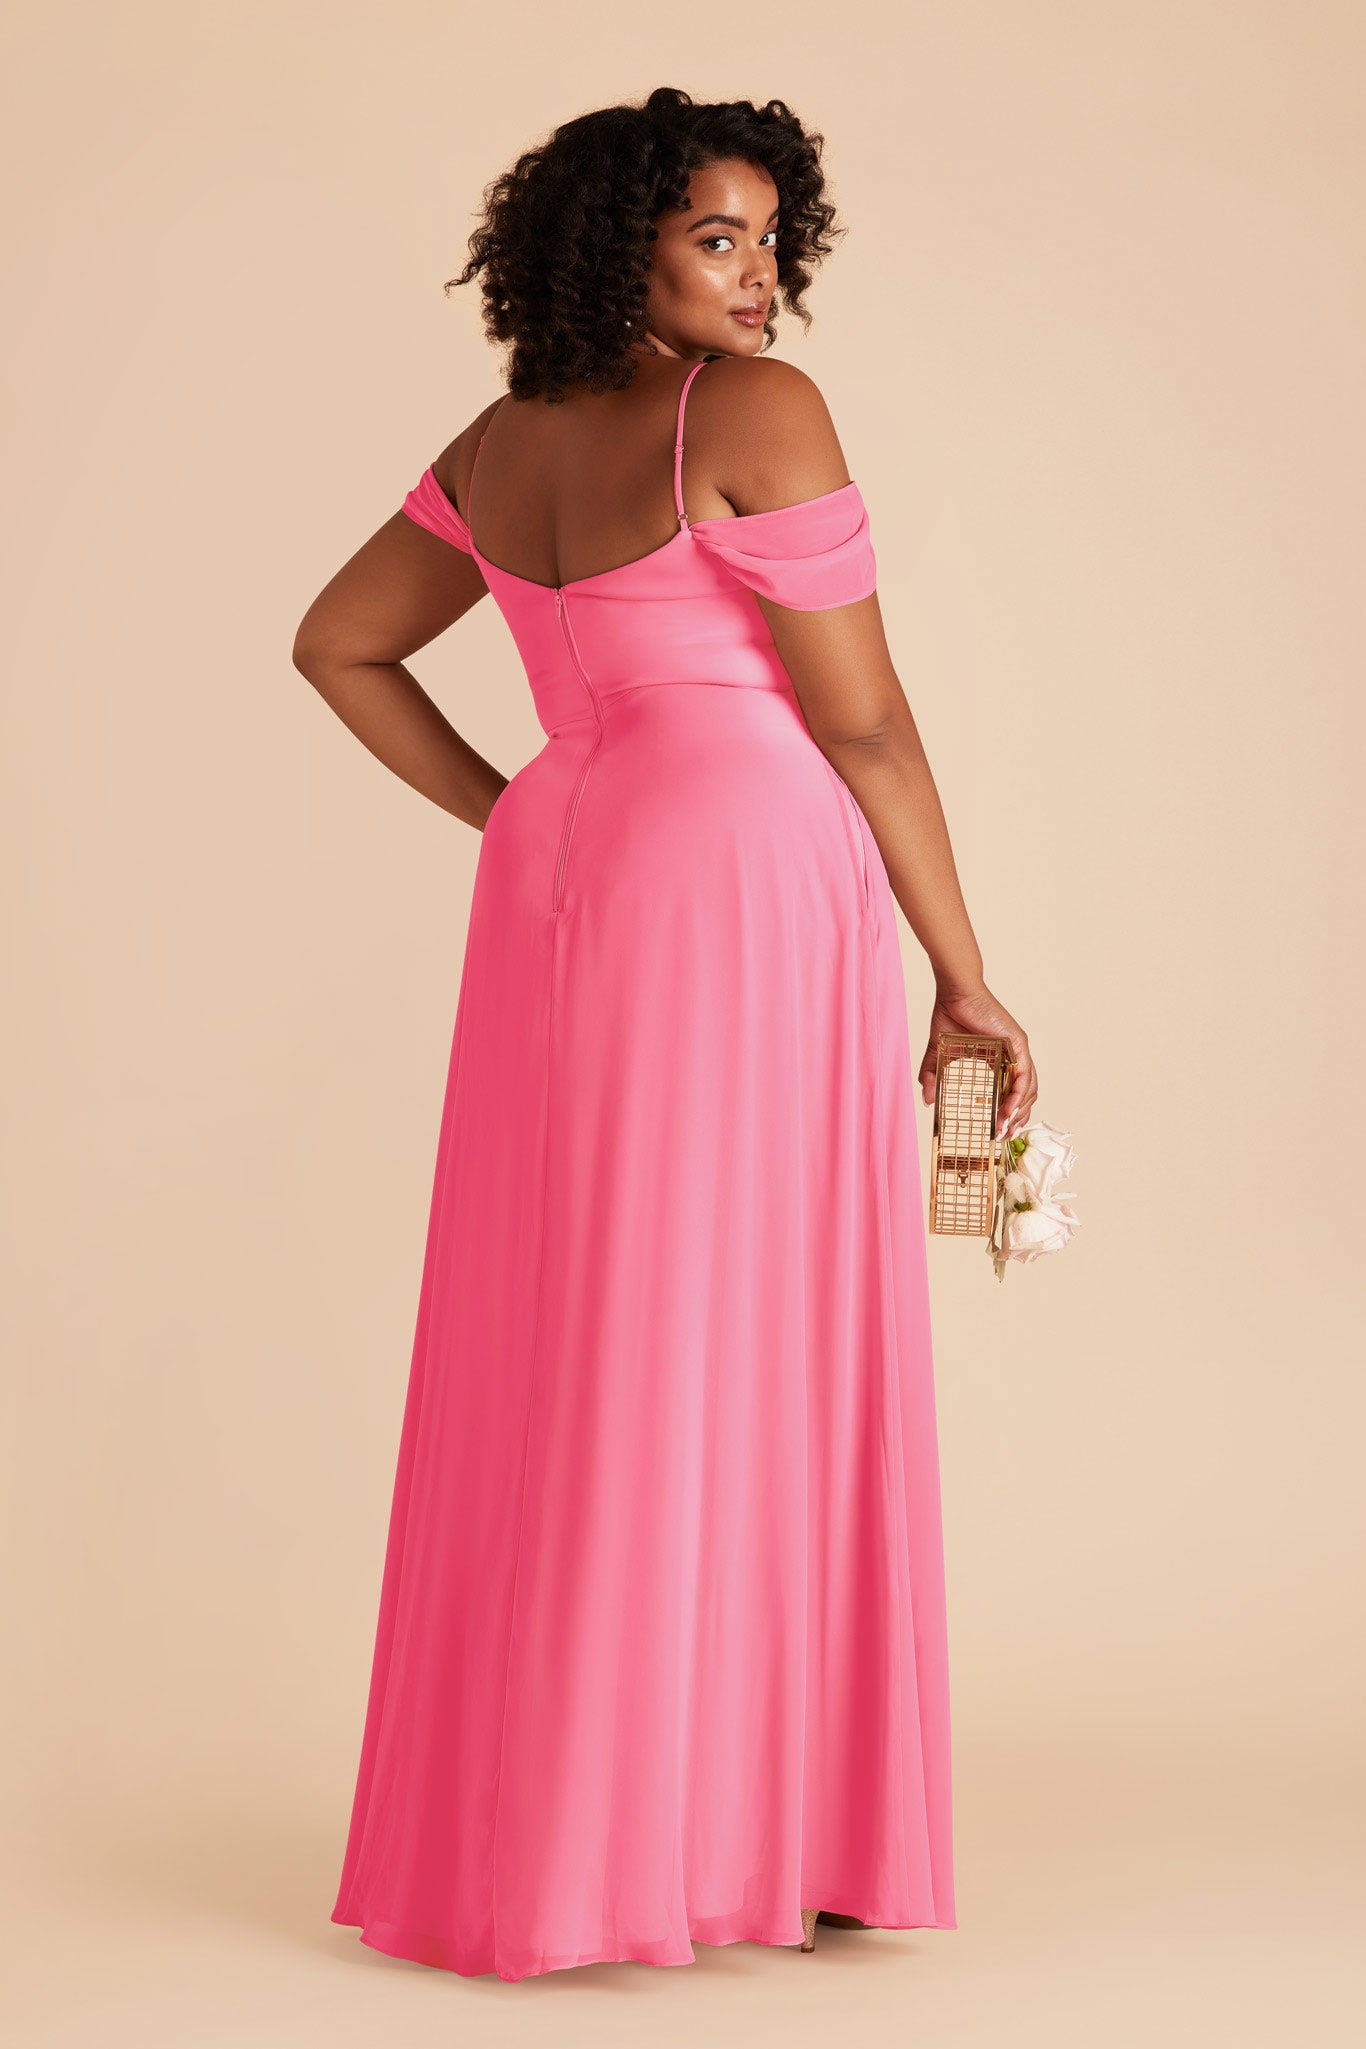 Bon Bon Pink Devin Convertible Dress by Birdy Grey